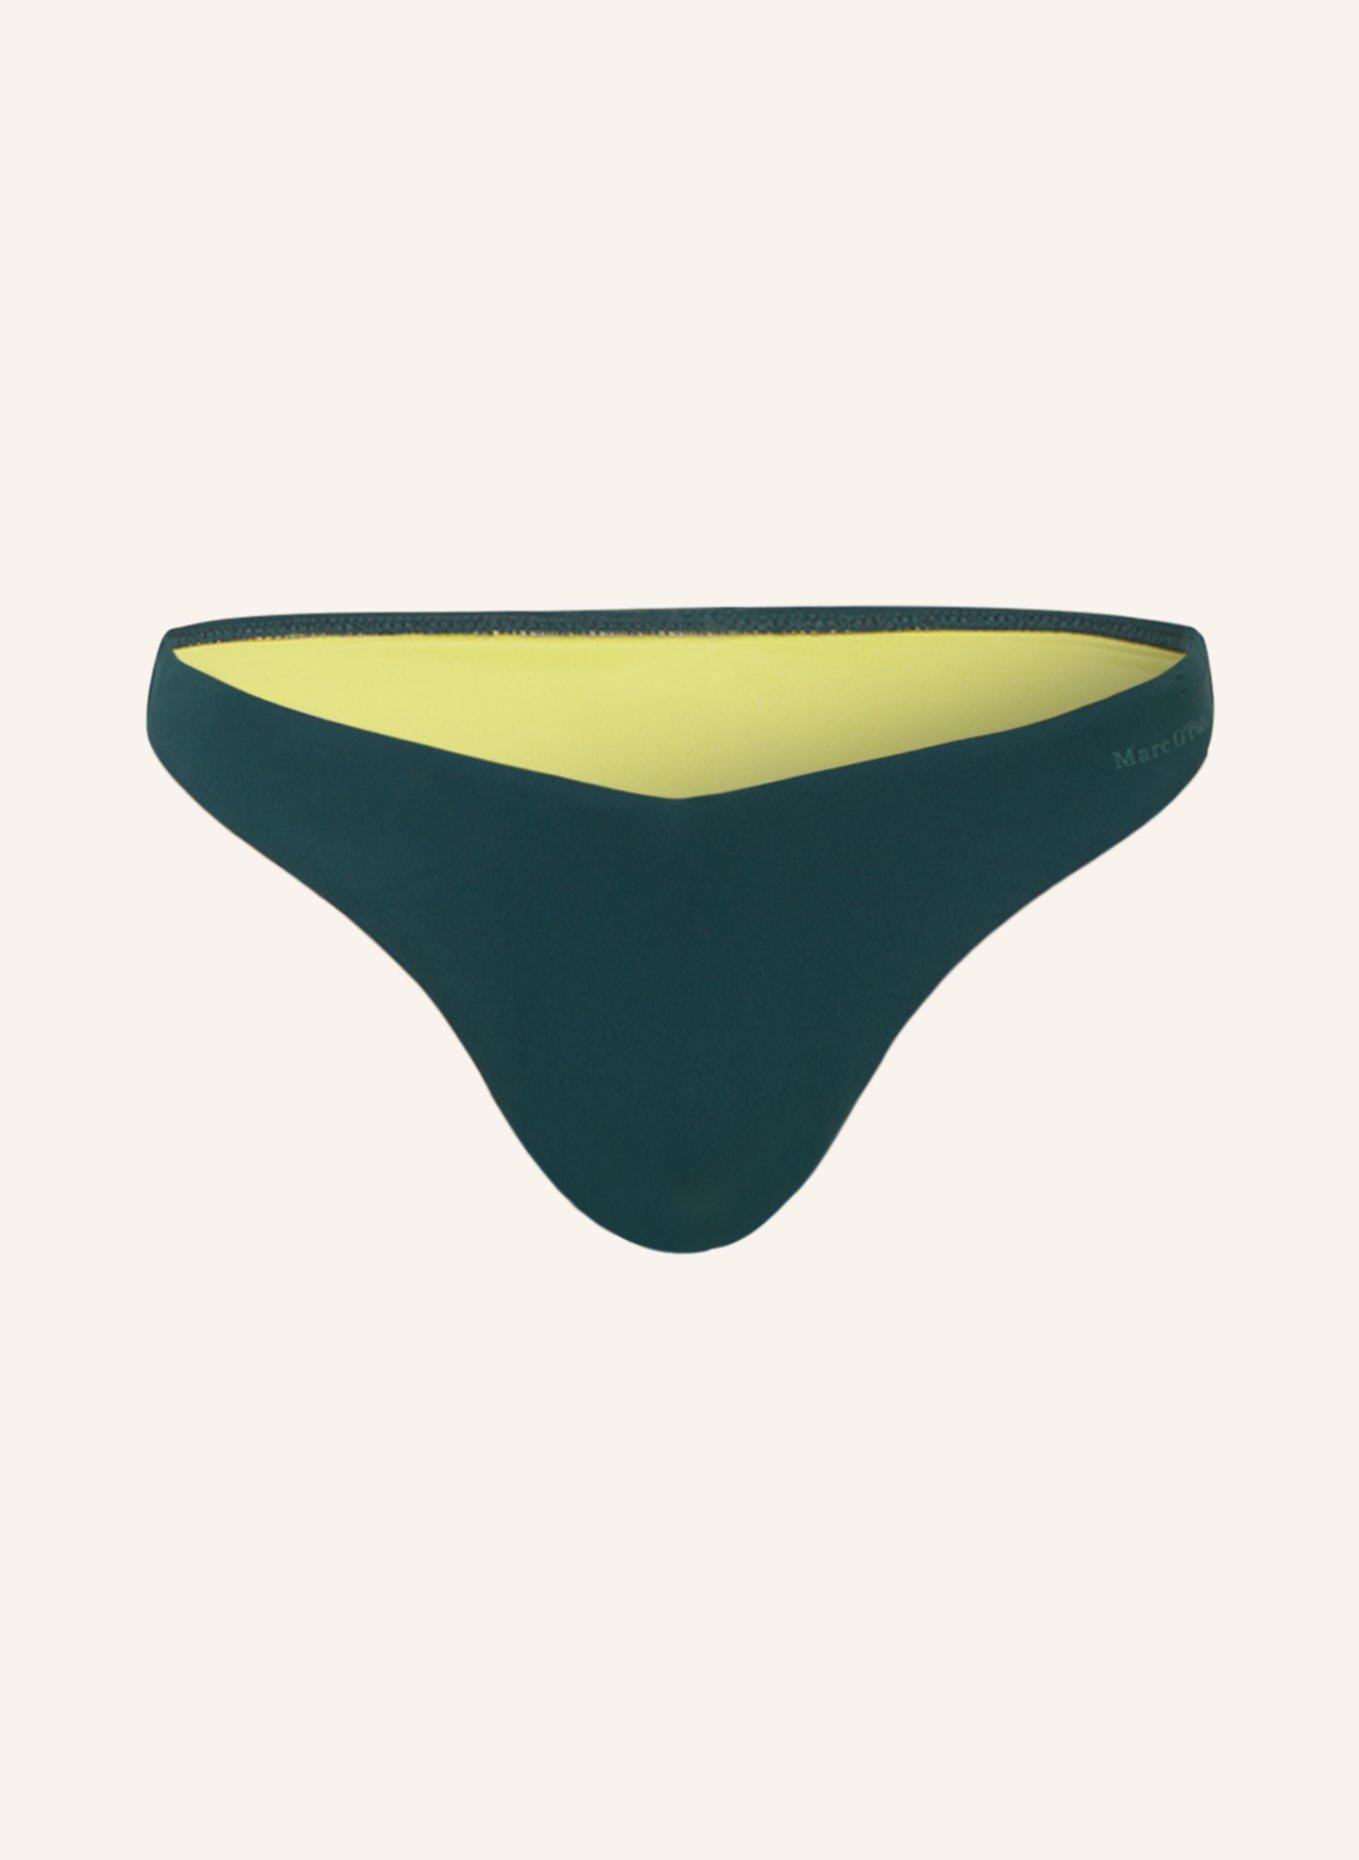 Marc O'Polo Brazilian bikini bottoms with UV protection, Color: OLIVE (Image 1)